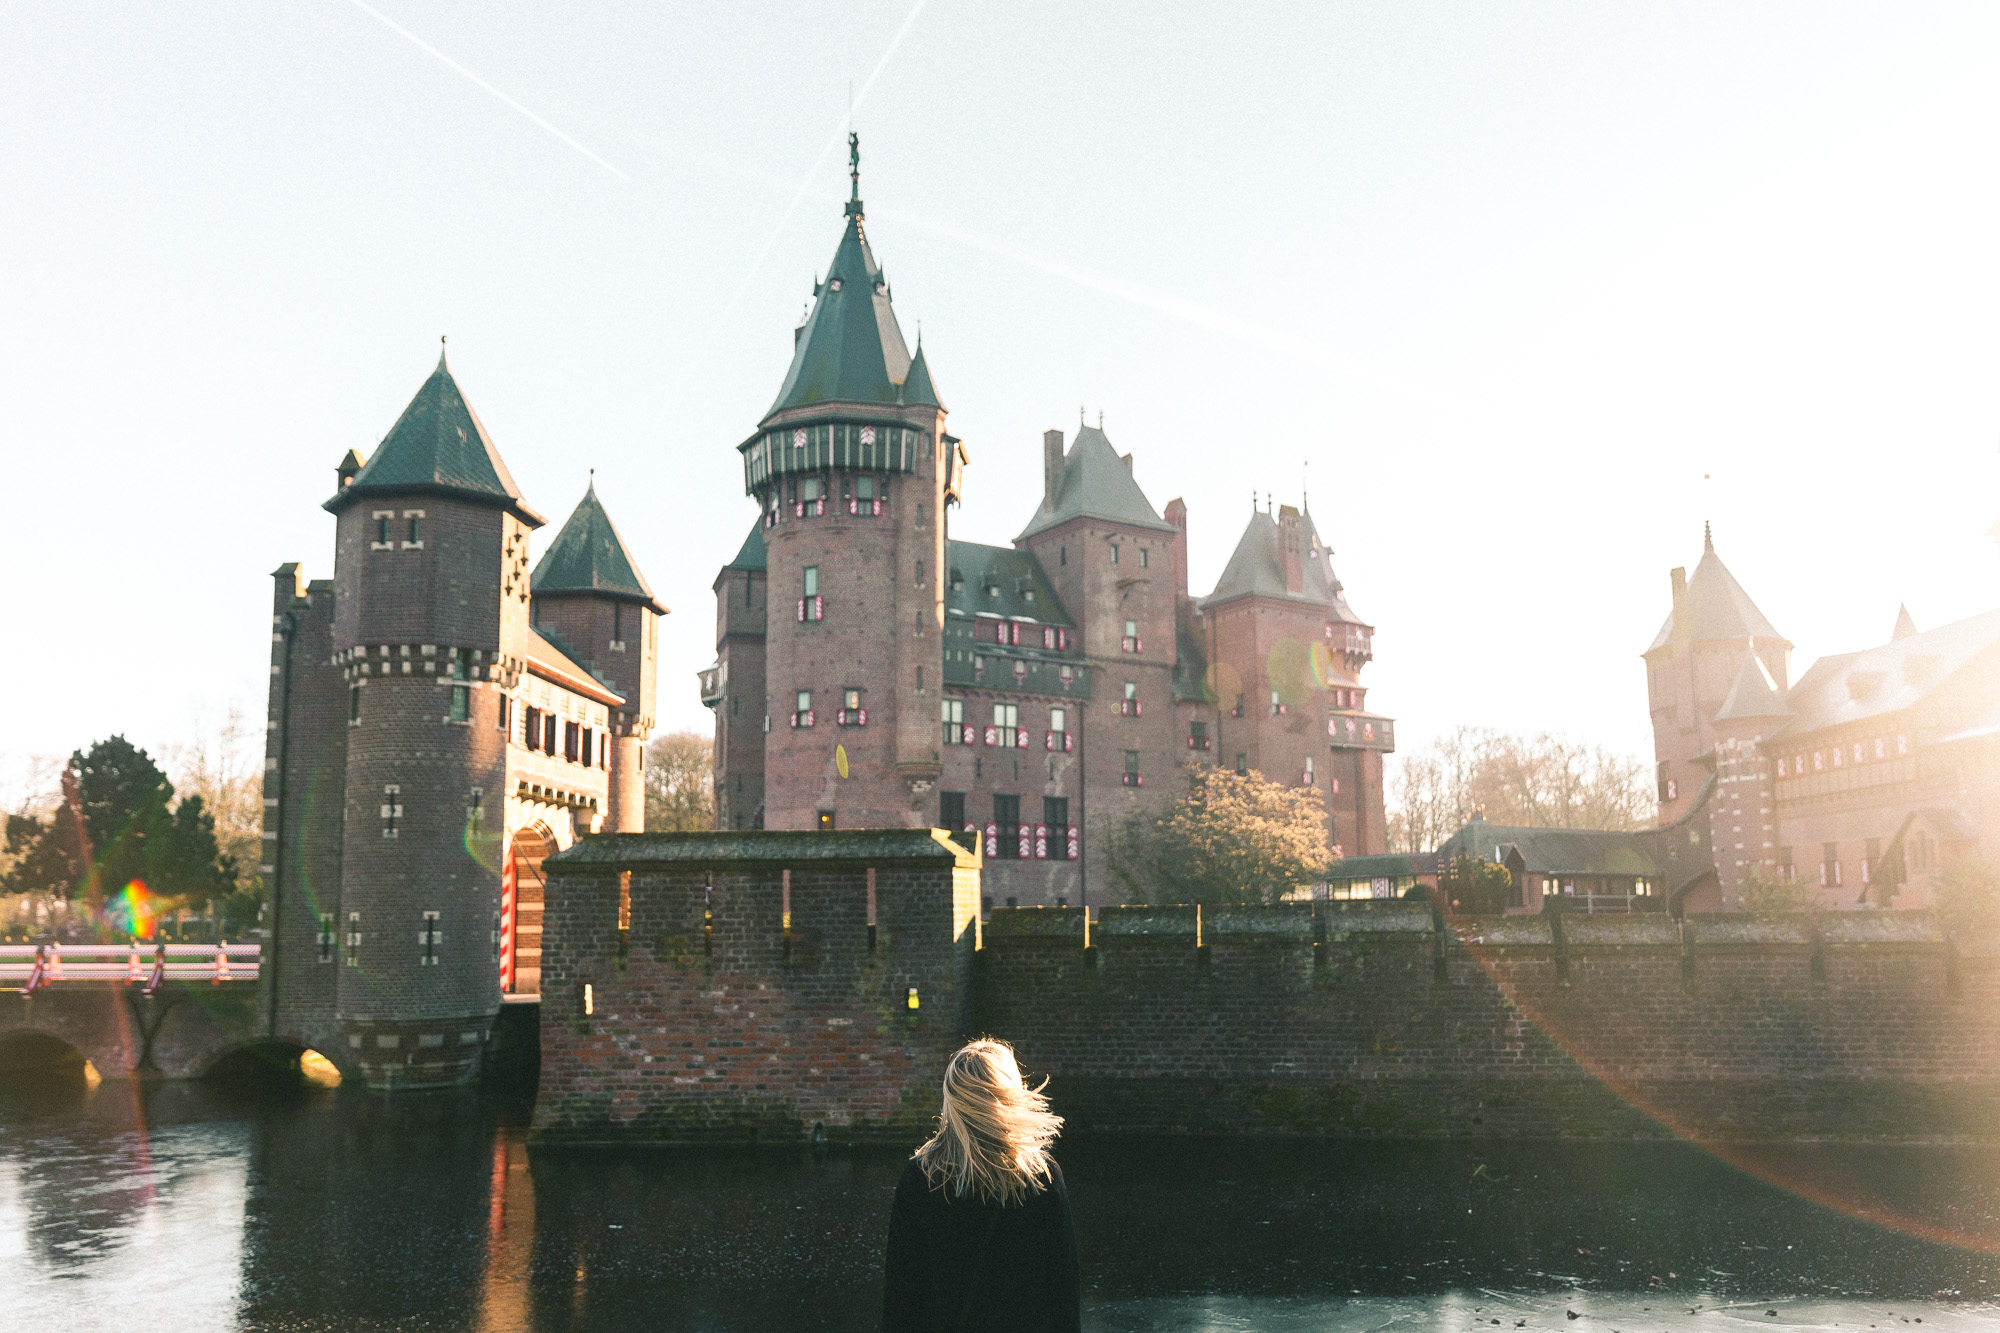 kasteel de haar castle in the netherlands